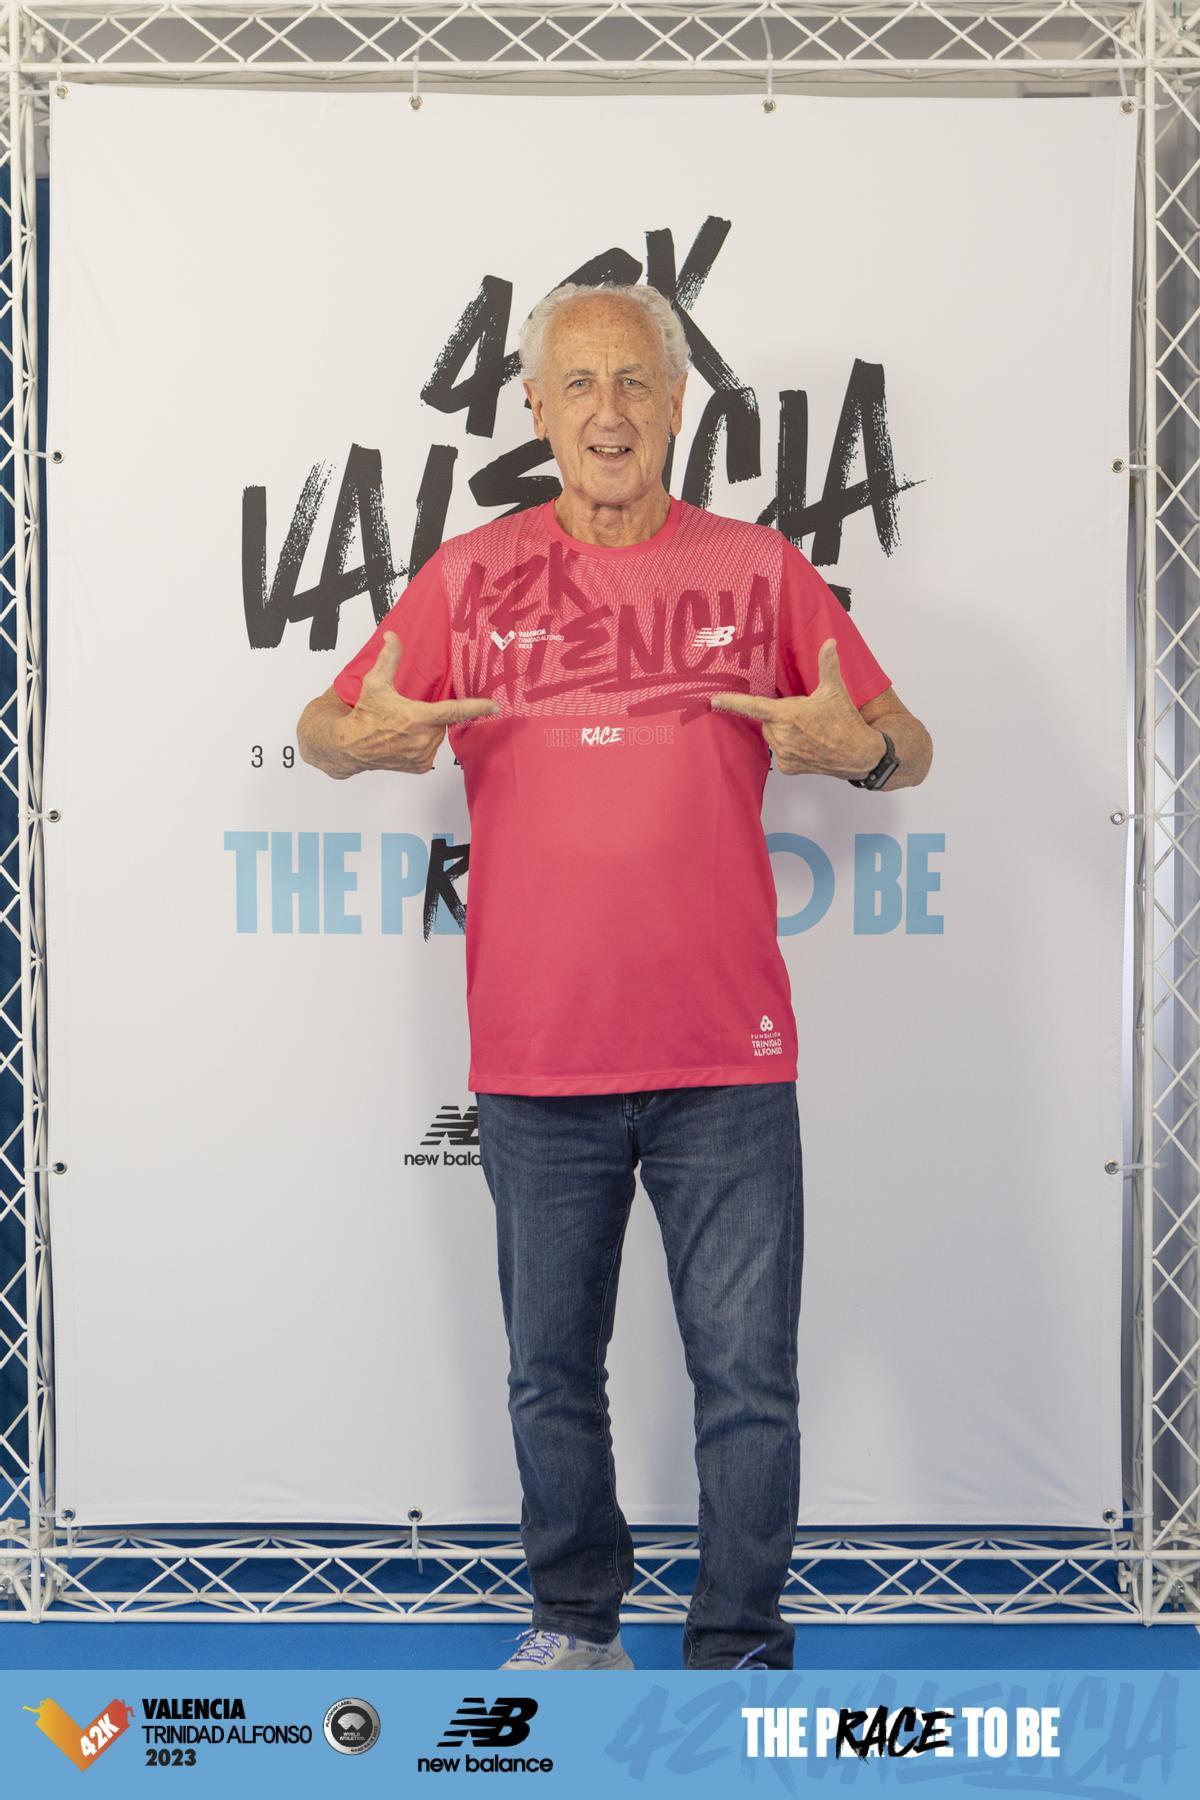 Paco Borao, luciendo la camiseta del Maratón Valencia Trinidad Alfonso 2023.